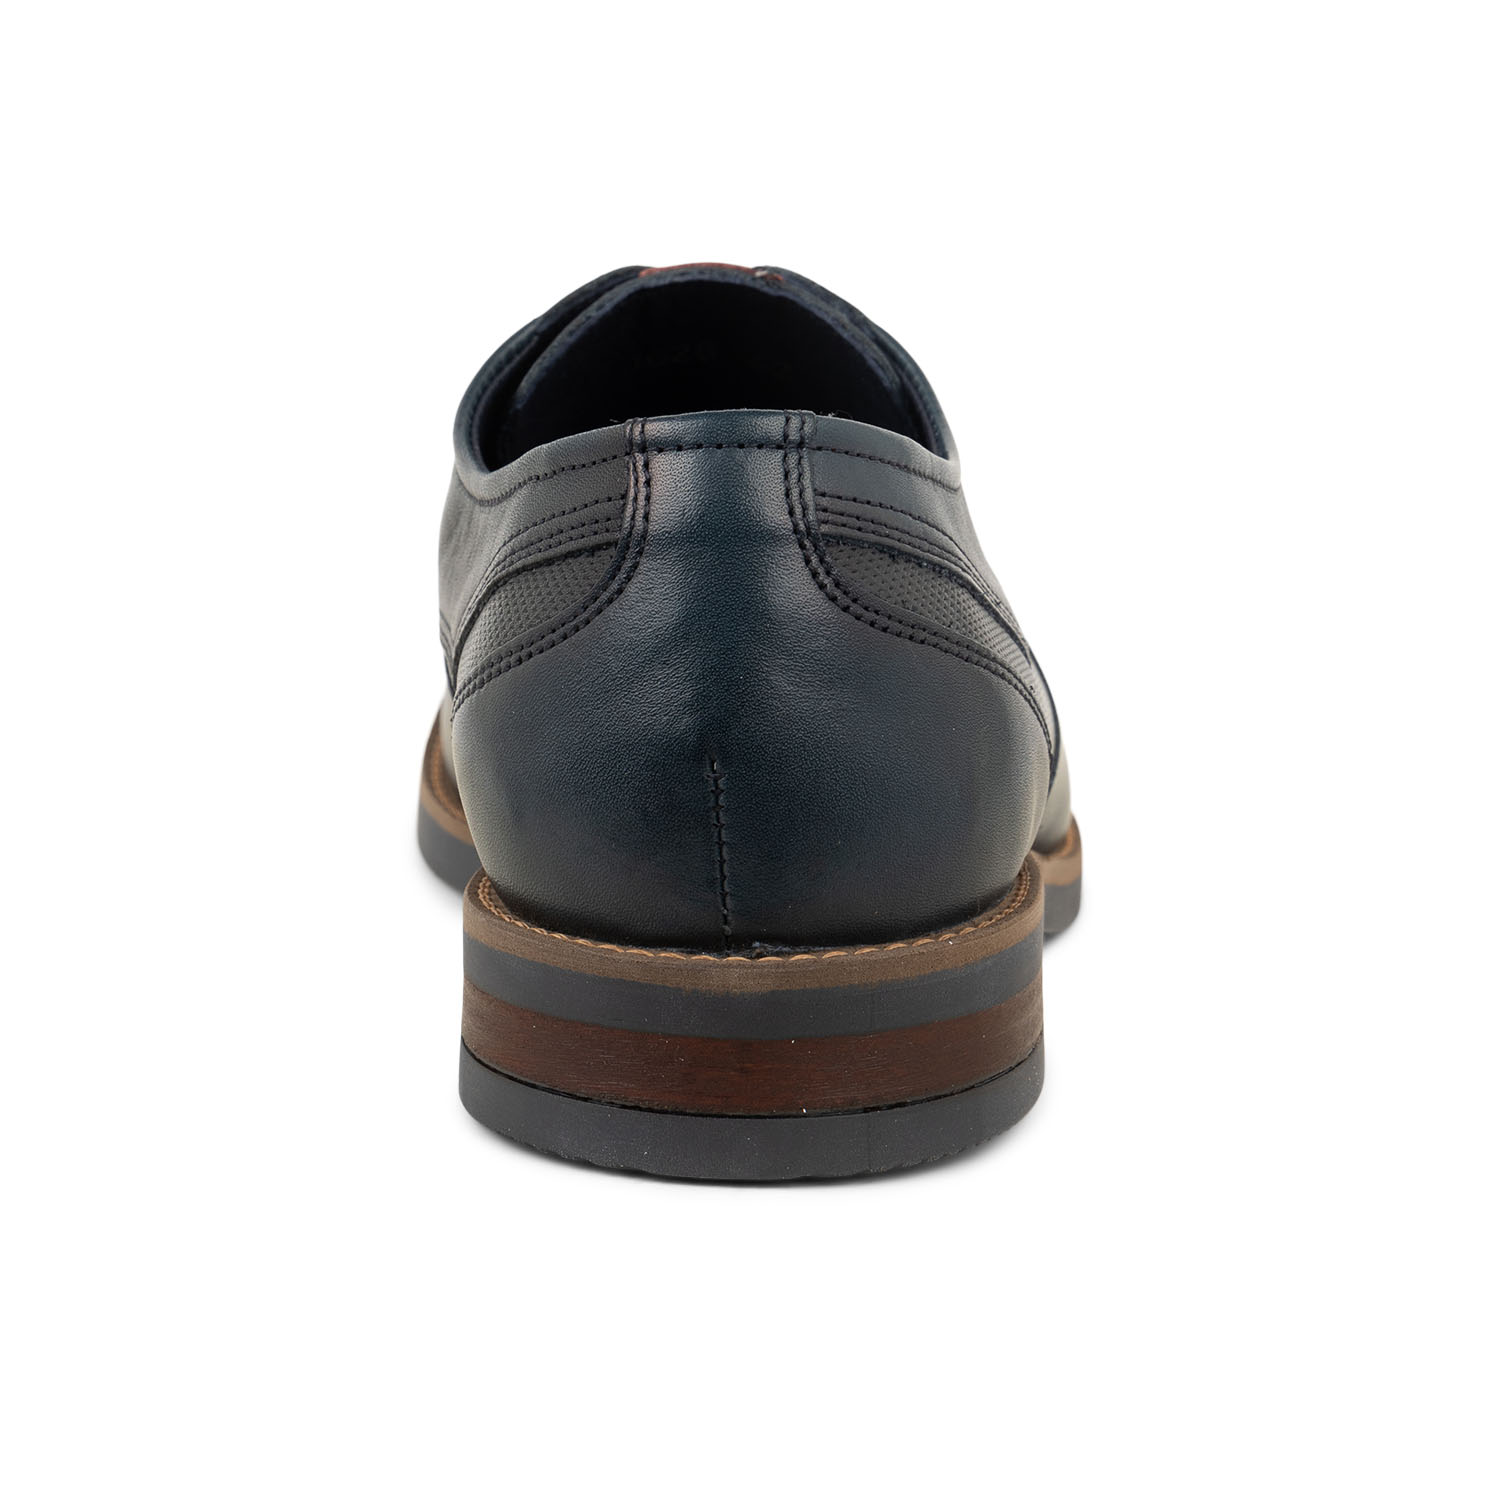 03 - FLUTHEO - FLUCHOS - Chaussures à lacets - Cuir